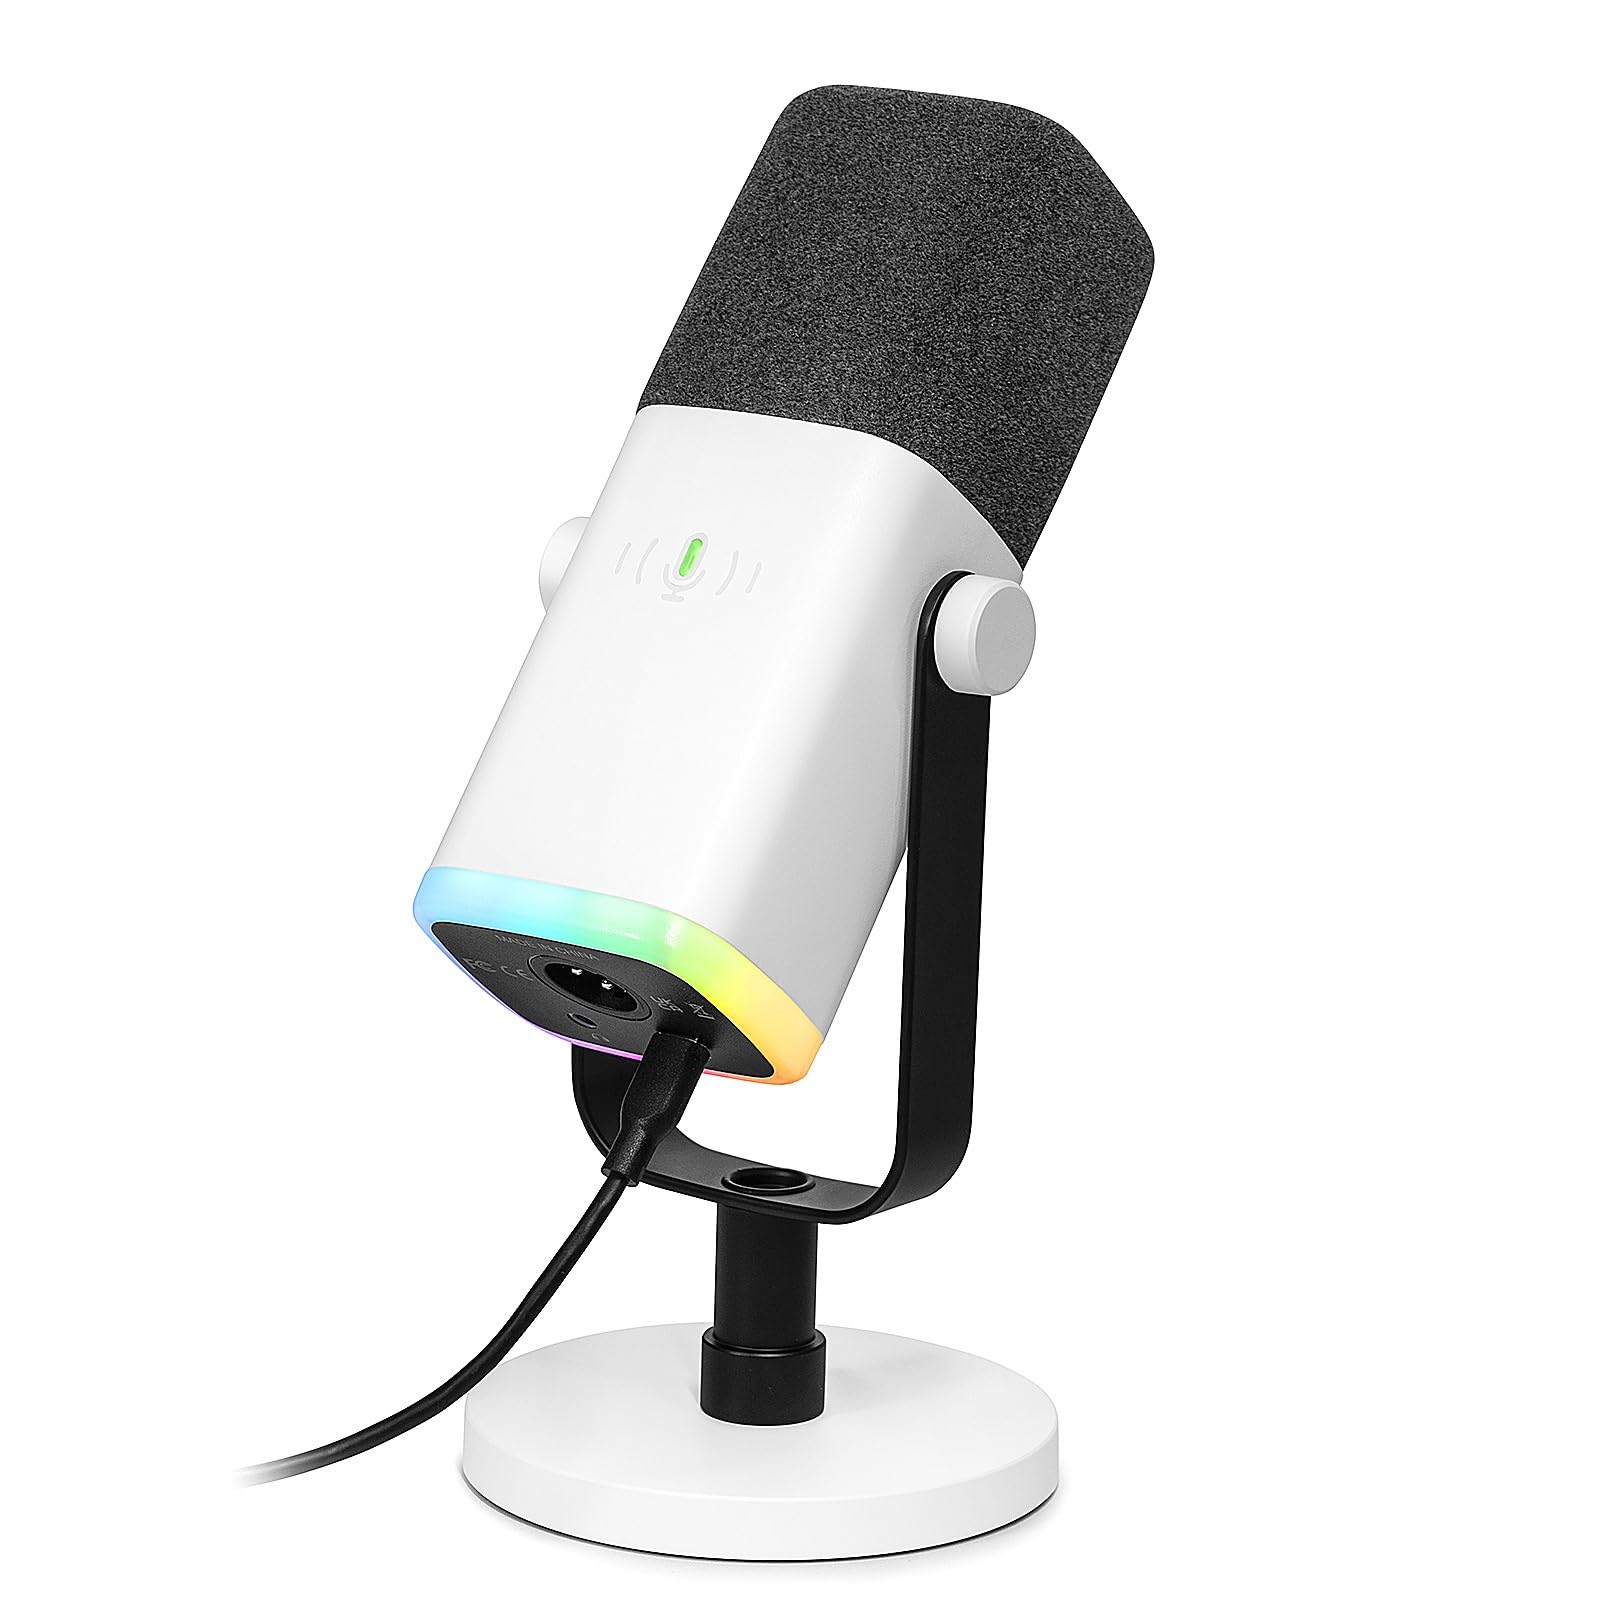 Achat FIFINE Microphone USB XLR pour studio de streaming podcast - Microphone dynamique - Avec bouton muet - Pour PS4/5 Mac Mixer Cartes son 4JTKZ8xKh pas cher